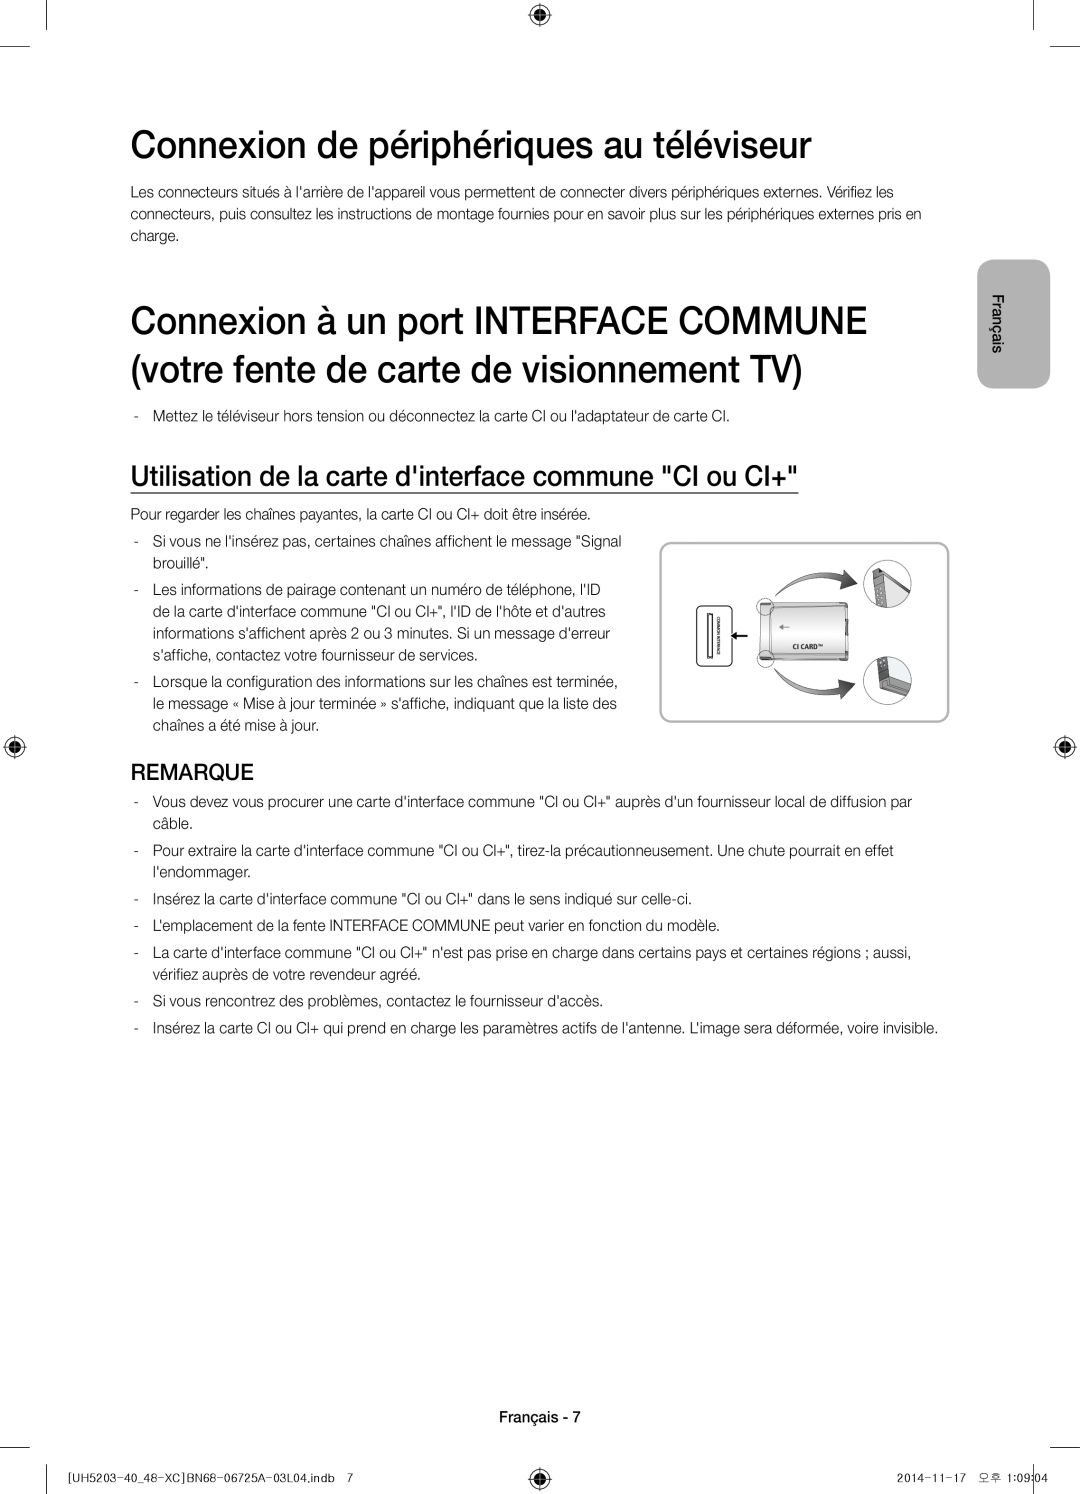 Samsung UE48H5203AWXXC Connexion de périphériques au téléviseur, Utilisation de la carte dinterface commune CI ou CI+ 